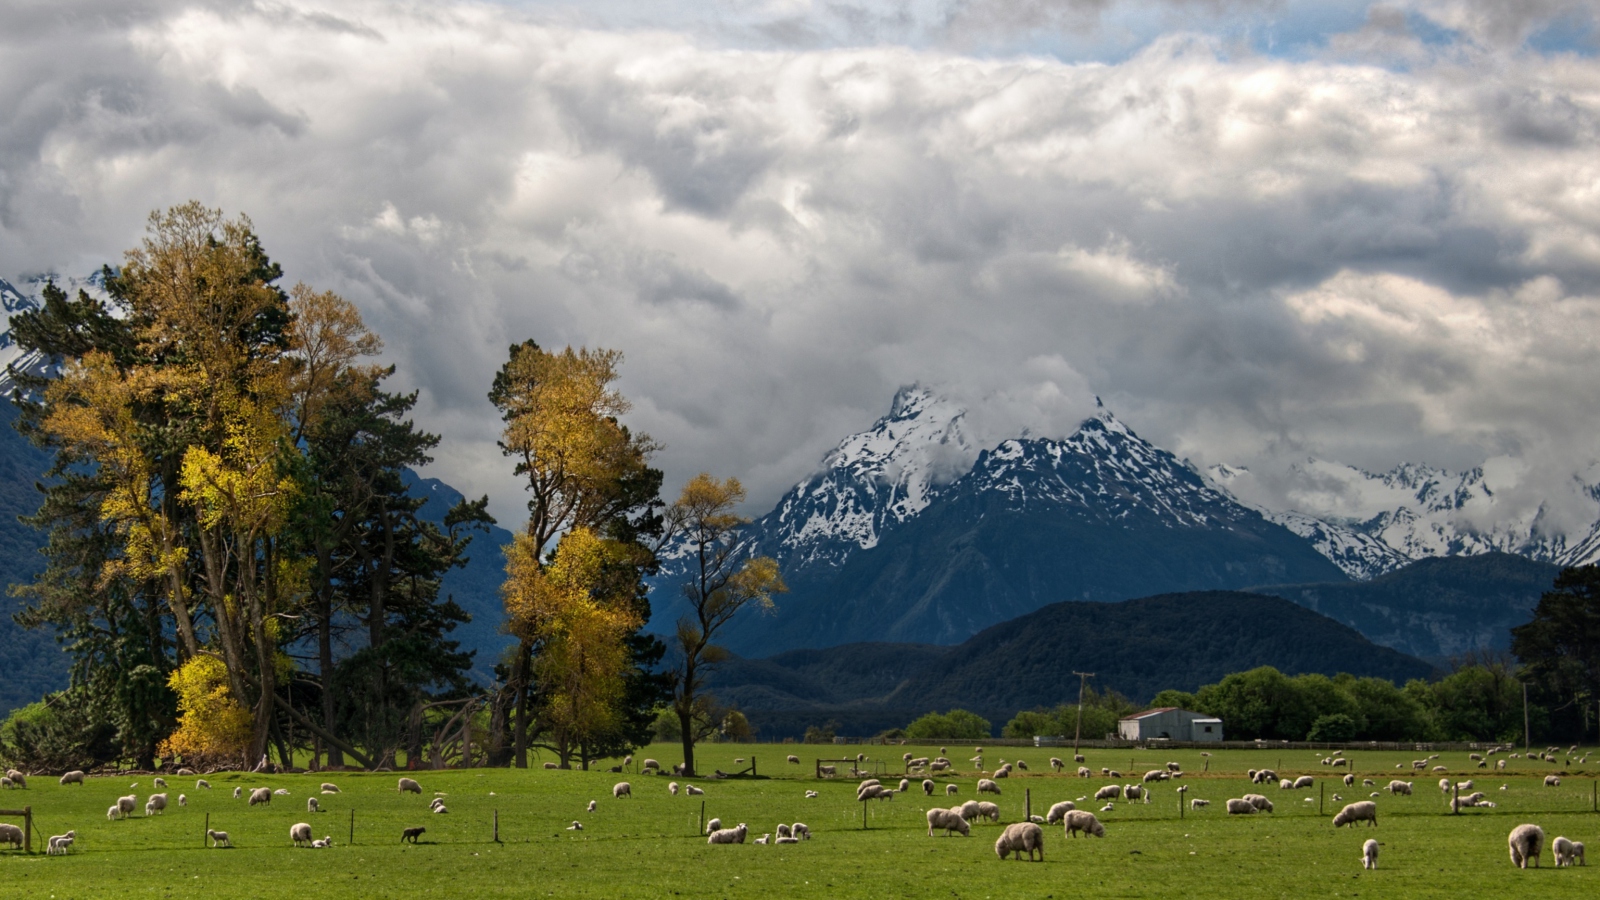 Обои Sheeps On Green Field And Mountain View 1600x900